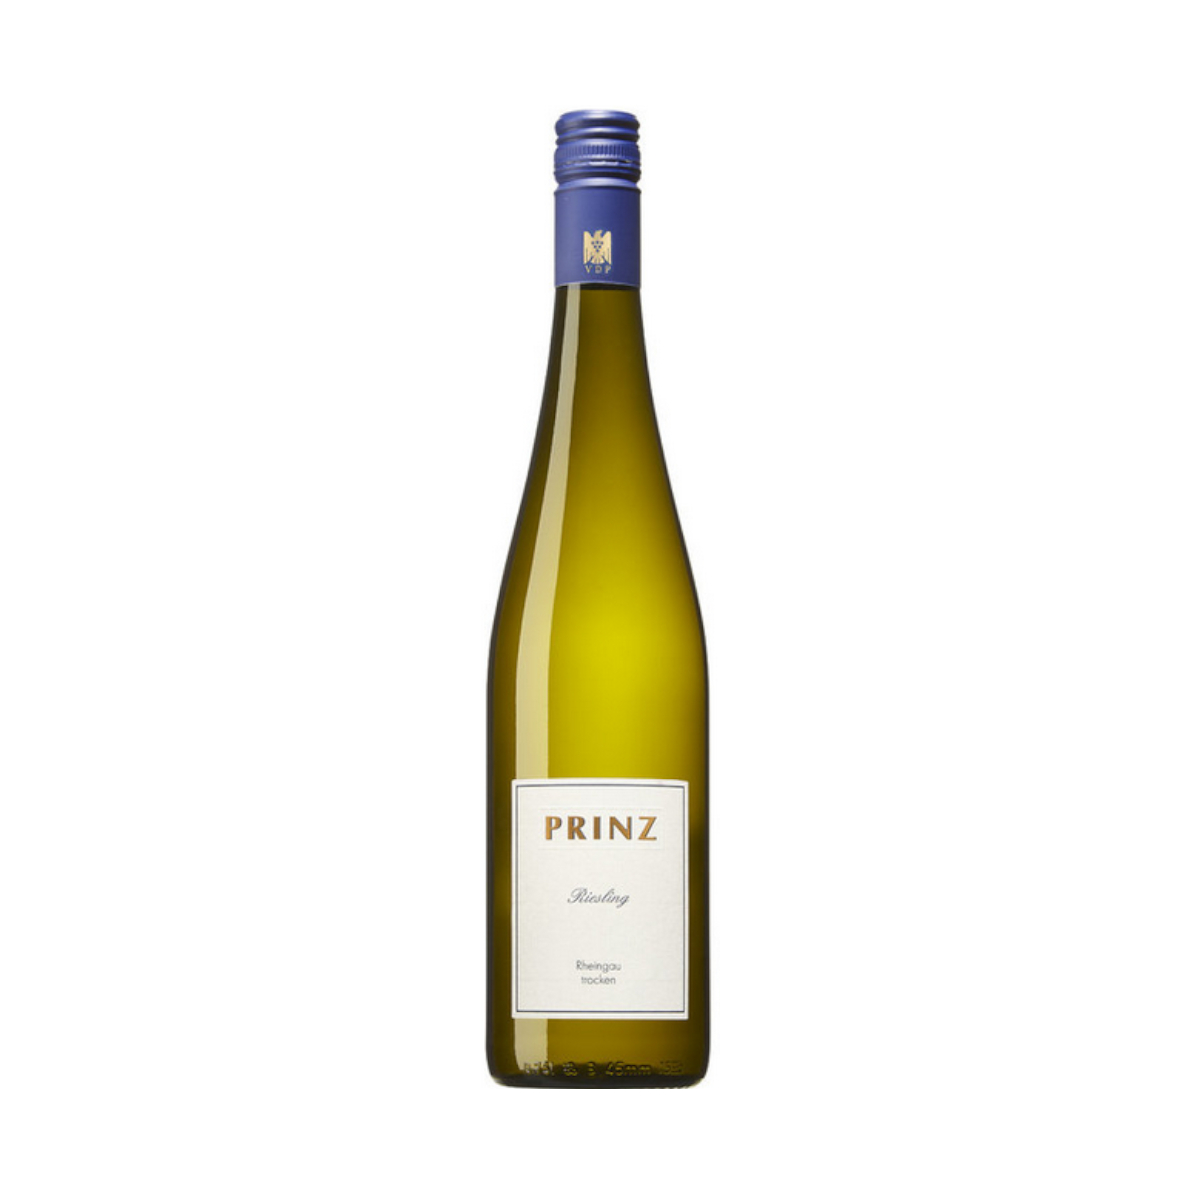 Prinz Riesling Qualitätswein, trocken Weingut Prinz (0,75 l)